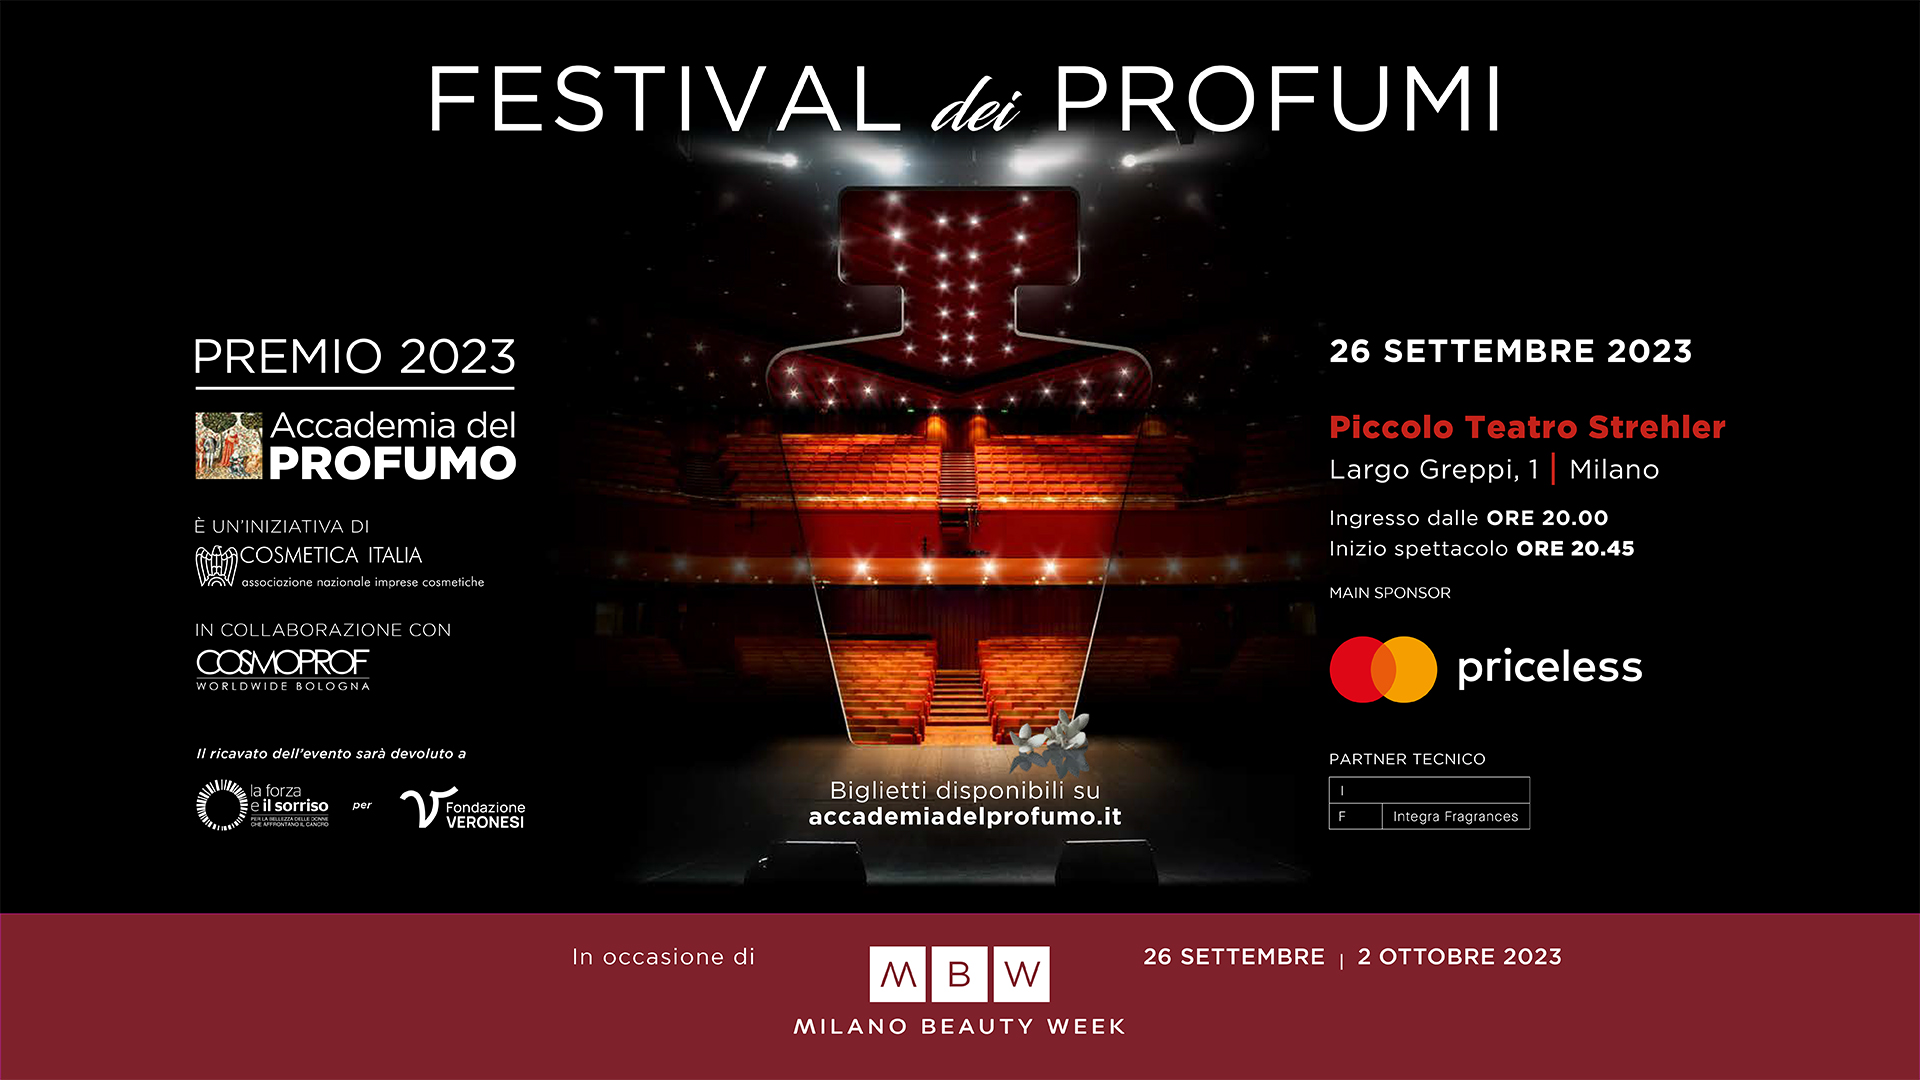 Festival del Profumo 2023 - Milano Beauty Week